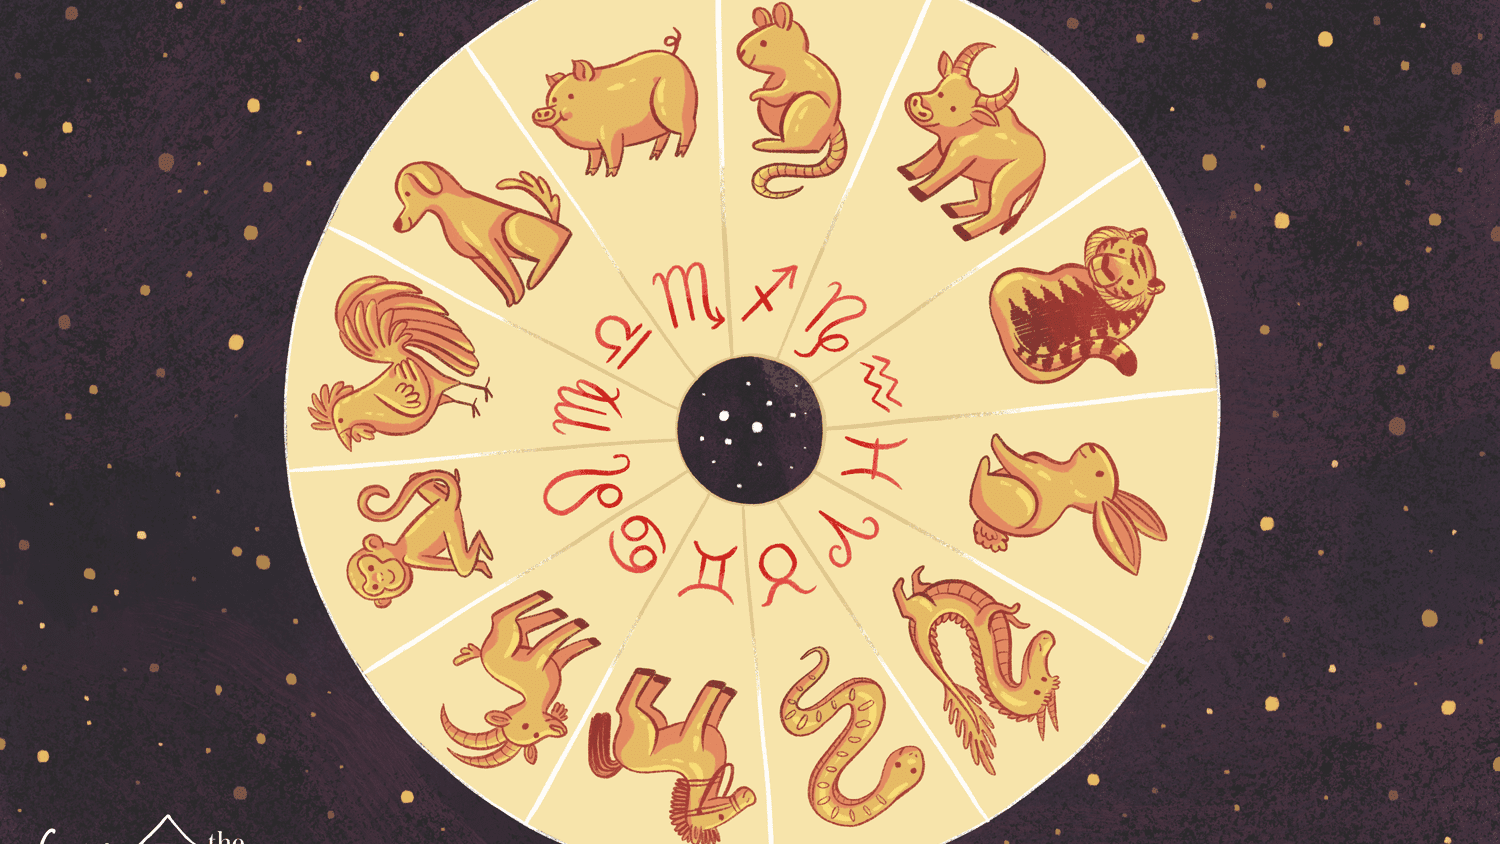 astrological sign for october 22